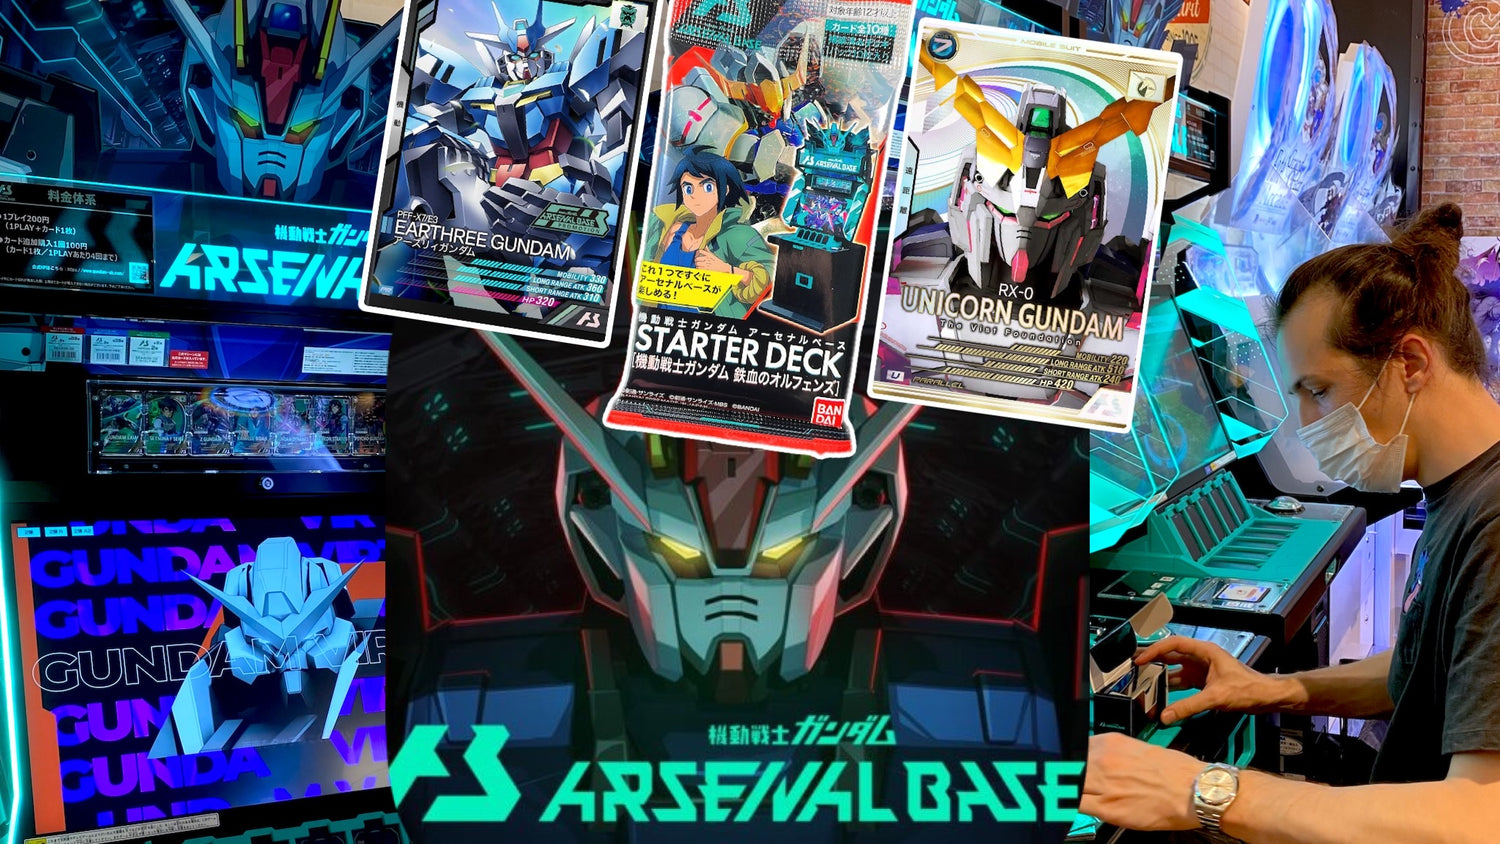 What is Gundam Arsenal Base?